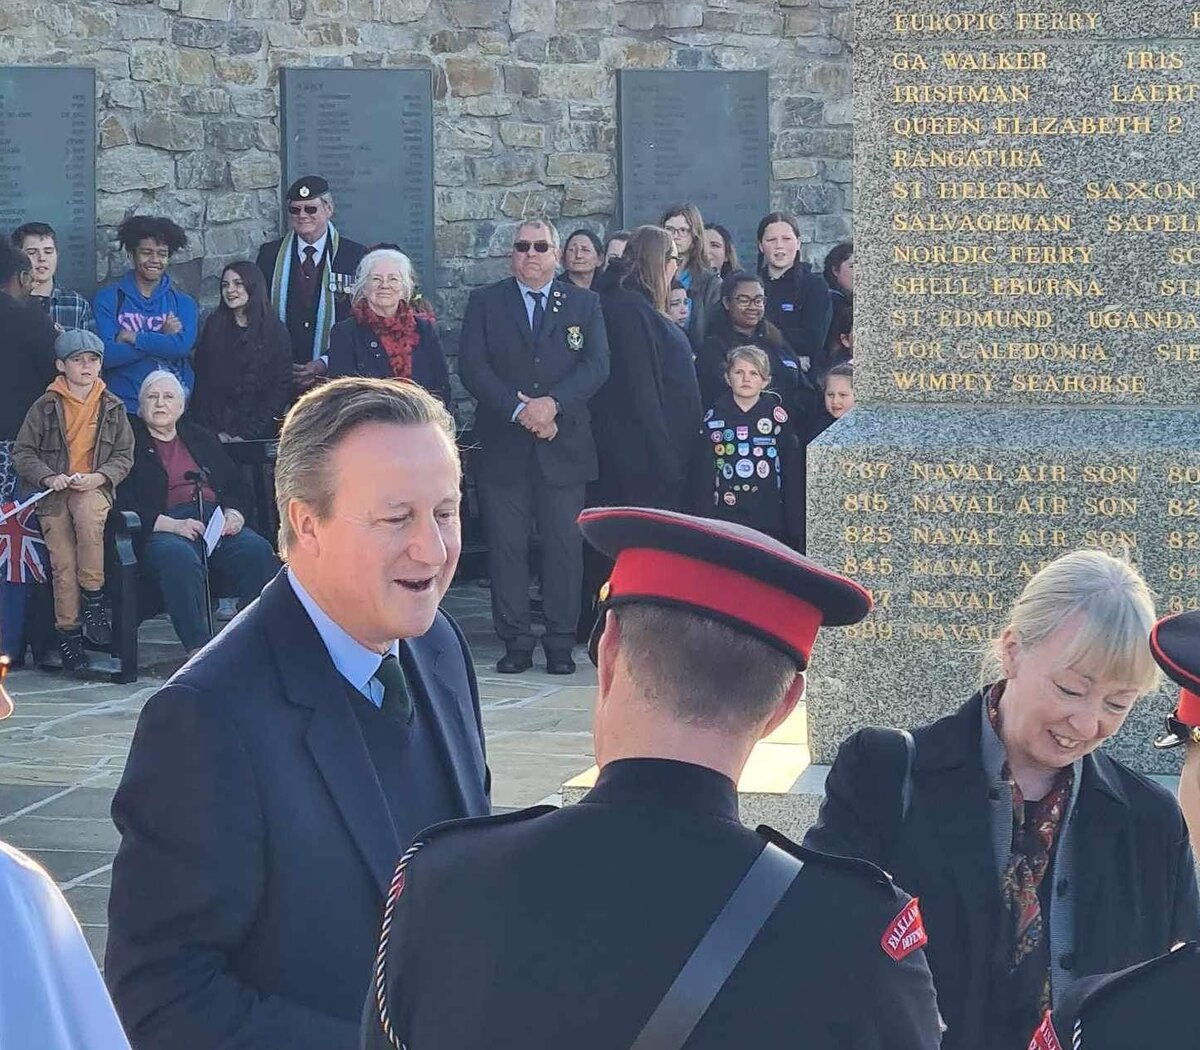 David Cameron en Malvinas: Voces de repudio y silencio del gobierno nacional | El canciller británico llegó hoy a las islas | Página|12